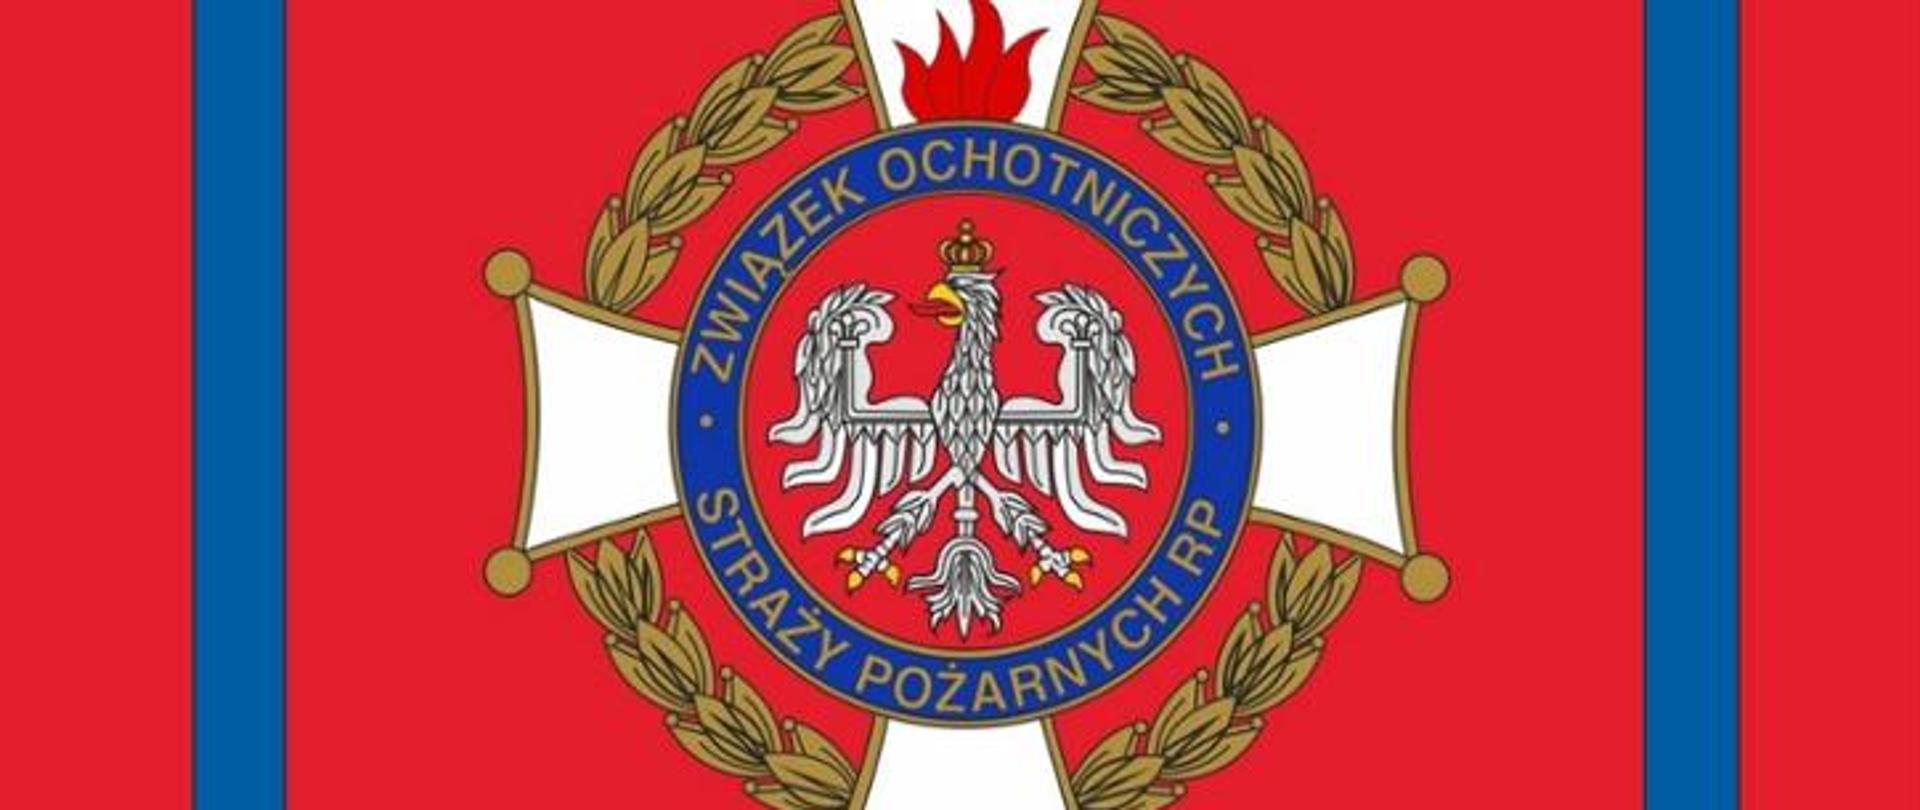 Obrazek przedstawiający logo Związku Ochotniczych Straży Pożarnych